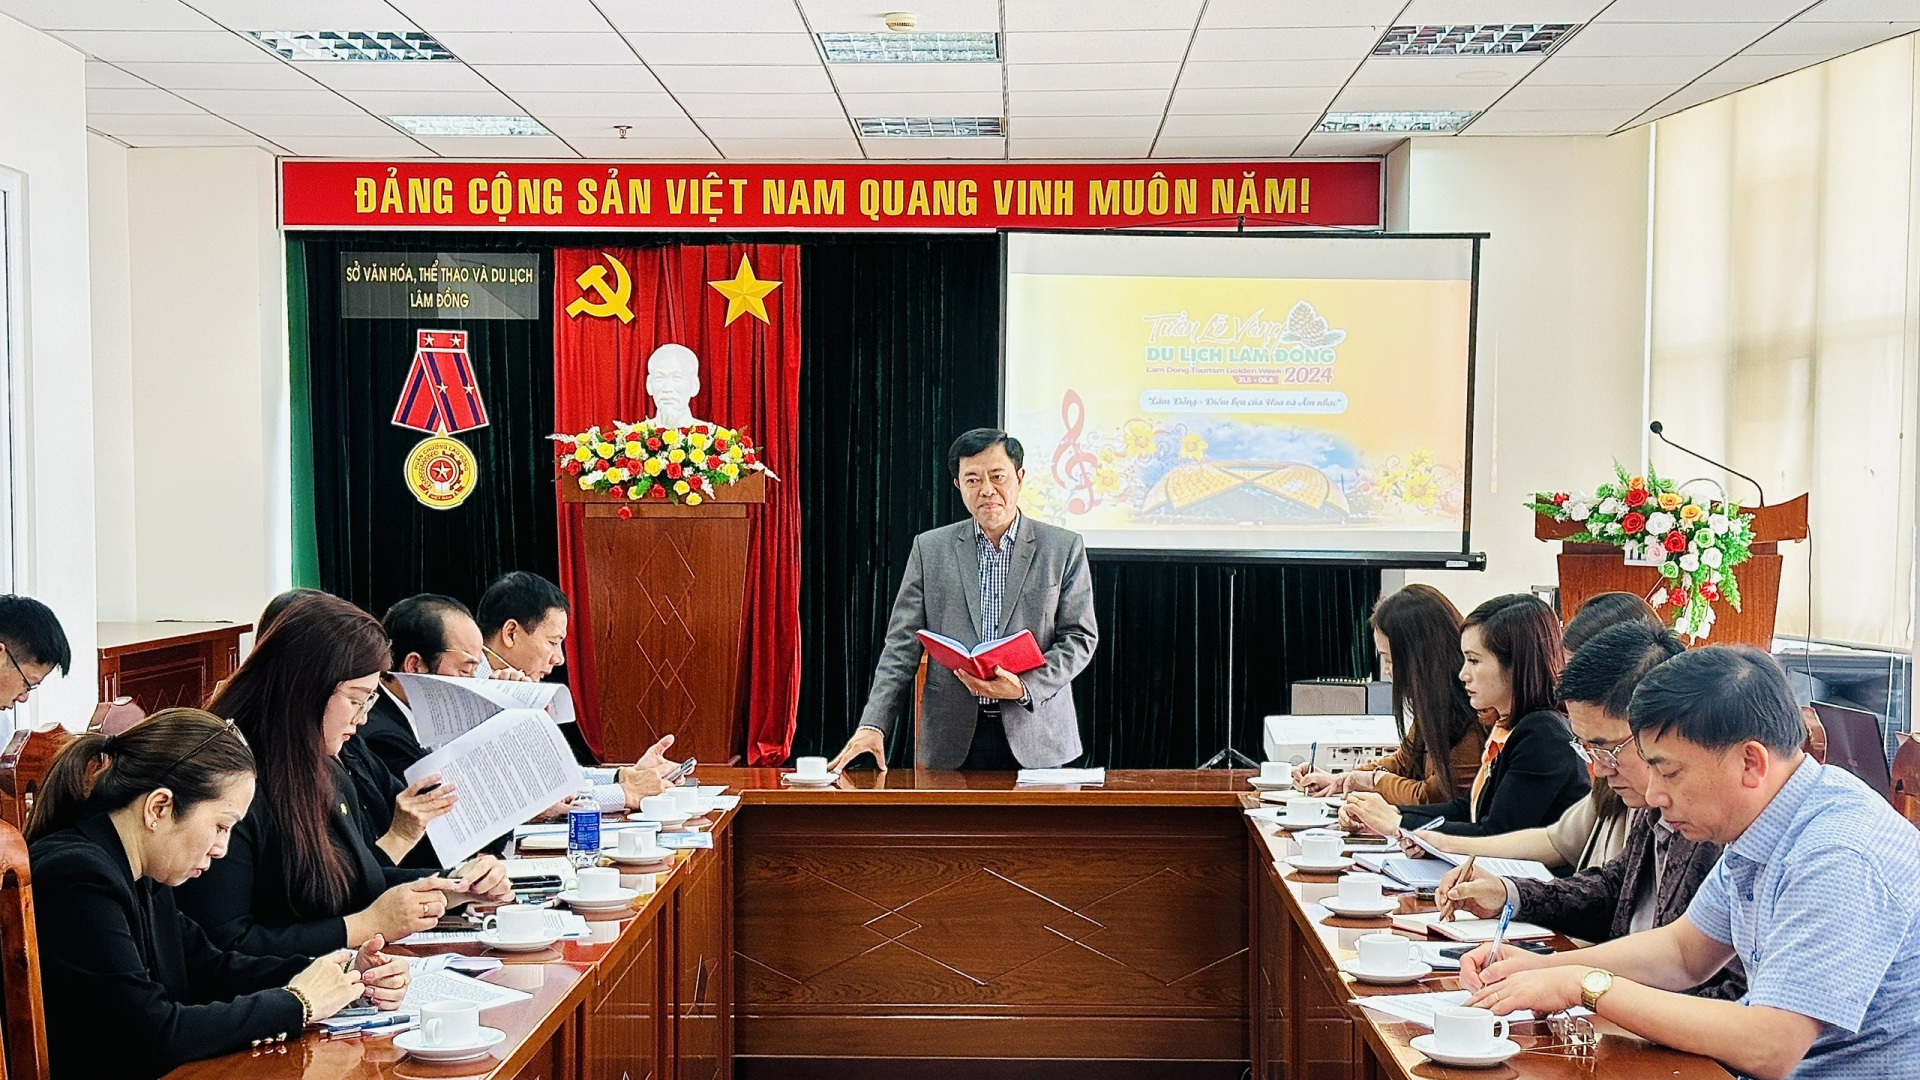 Ông Nguyễn Trung Kiên - Giám đốc Sở Văn hóa Thể thao và Du lịch, điều hành cuộc họp phân công nhiệm vụ triển khai các hoạt động trong Tuần lễ Vàng du lịch Lâm Đồng lần thứ 3